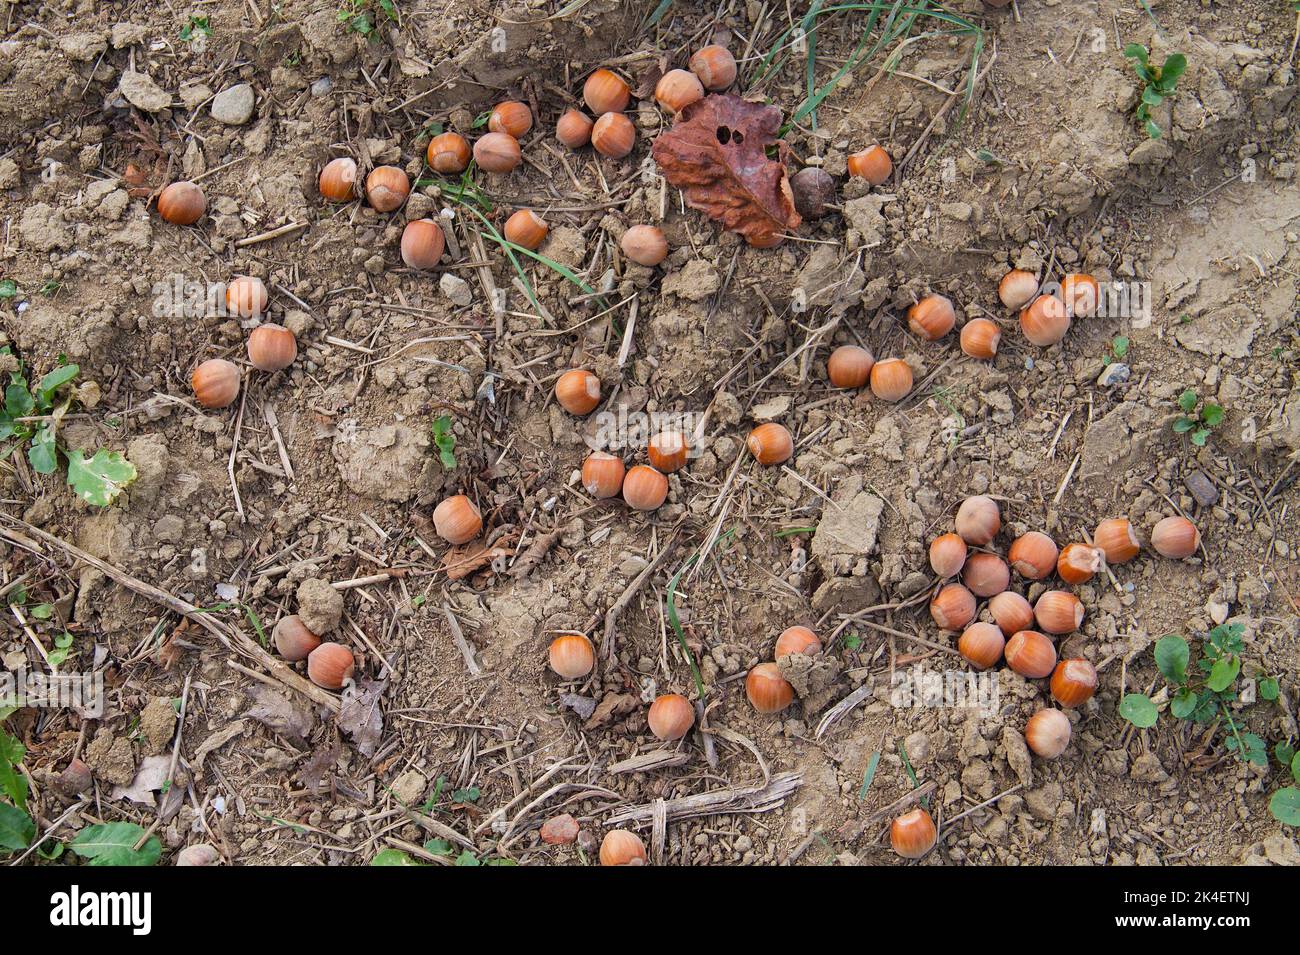 Ripe hazelnuts fallen from trees in a hazelnut orchard Stock Photo